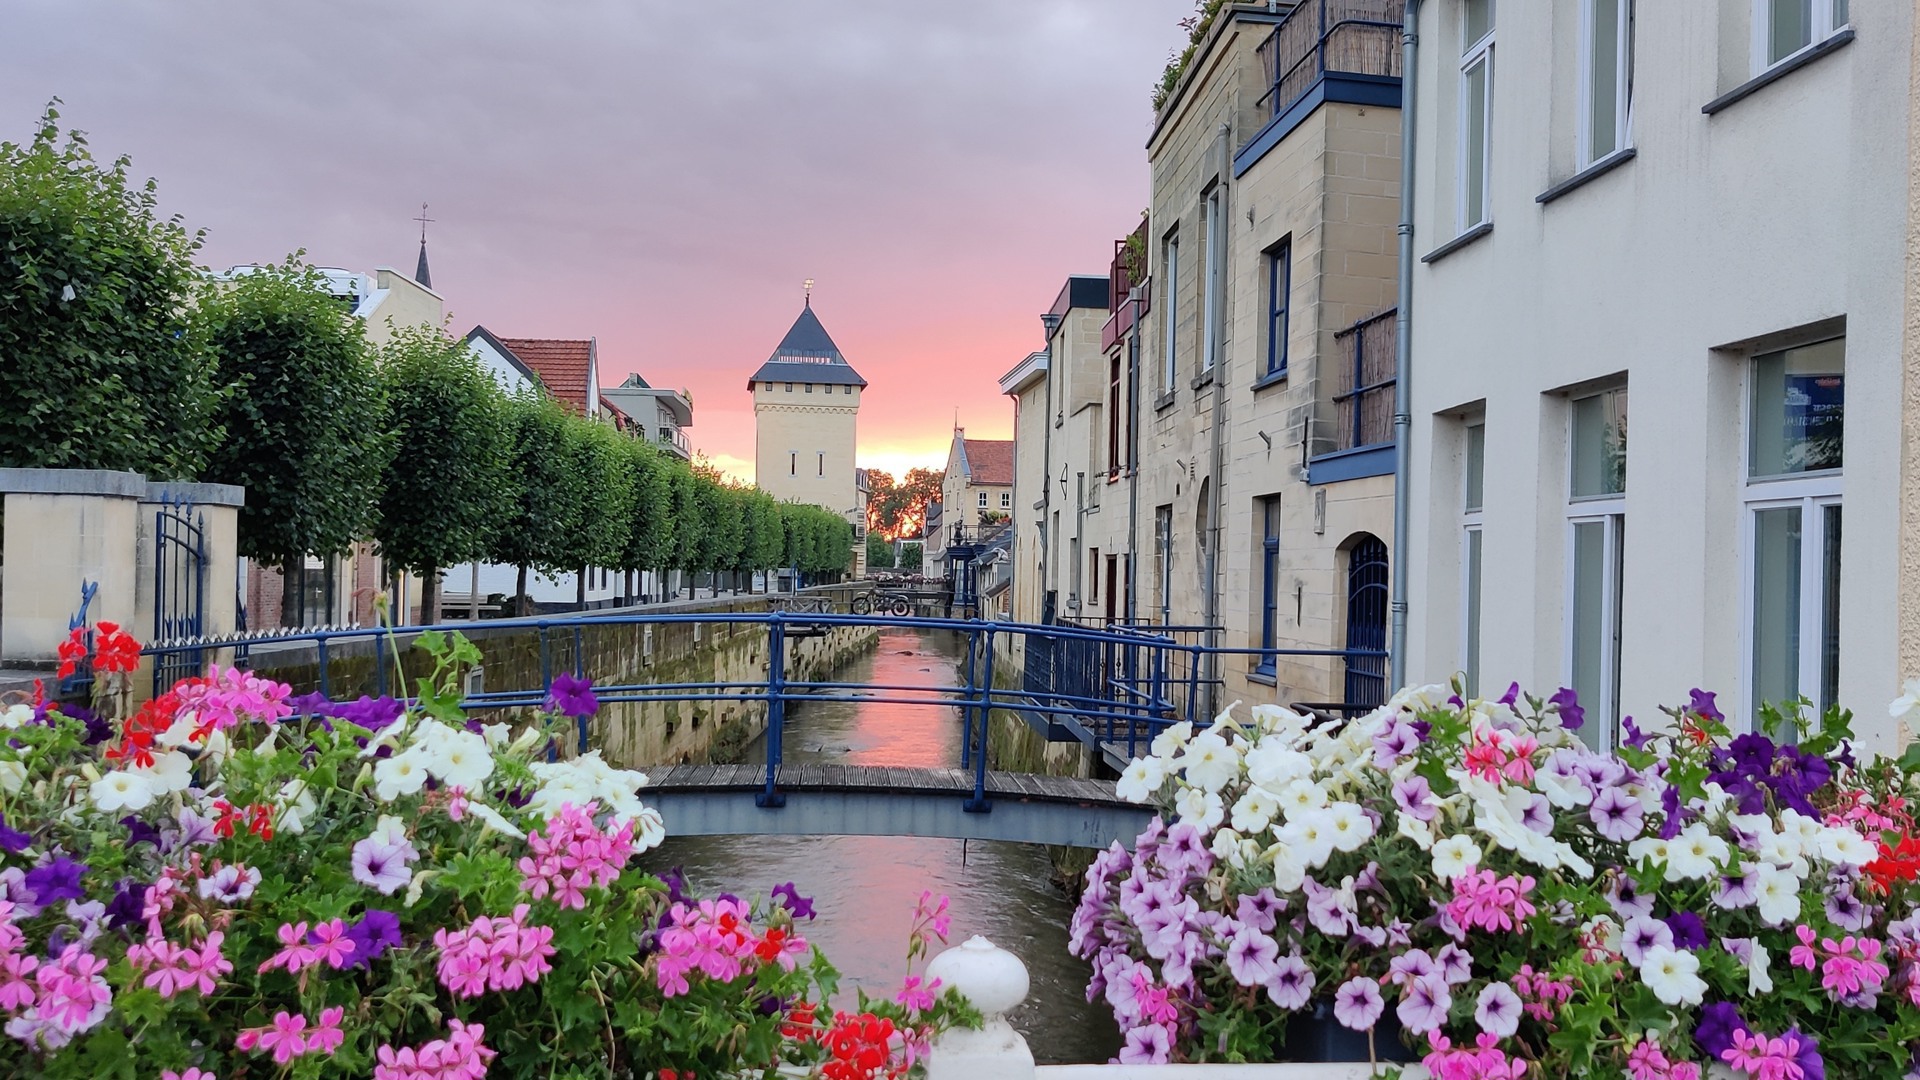 Entdecken Sie die schöne Umgebung von Maastricht!